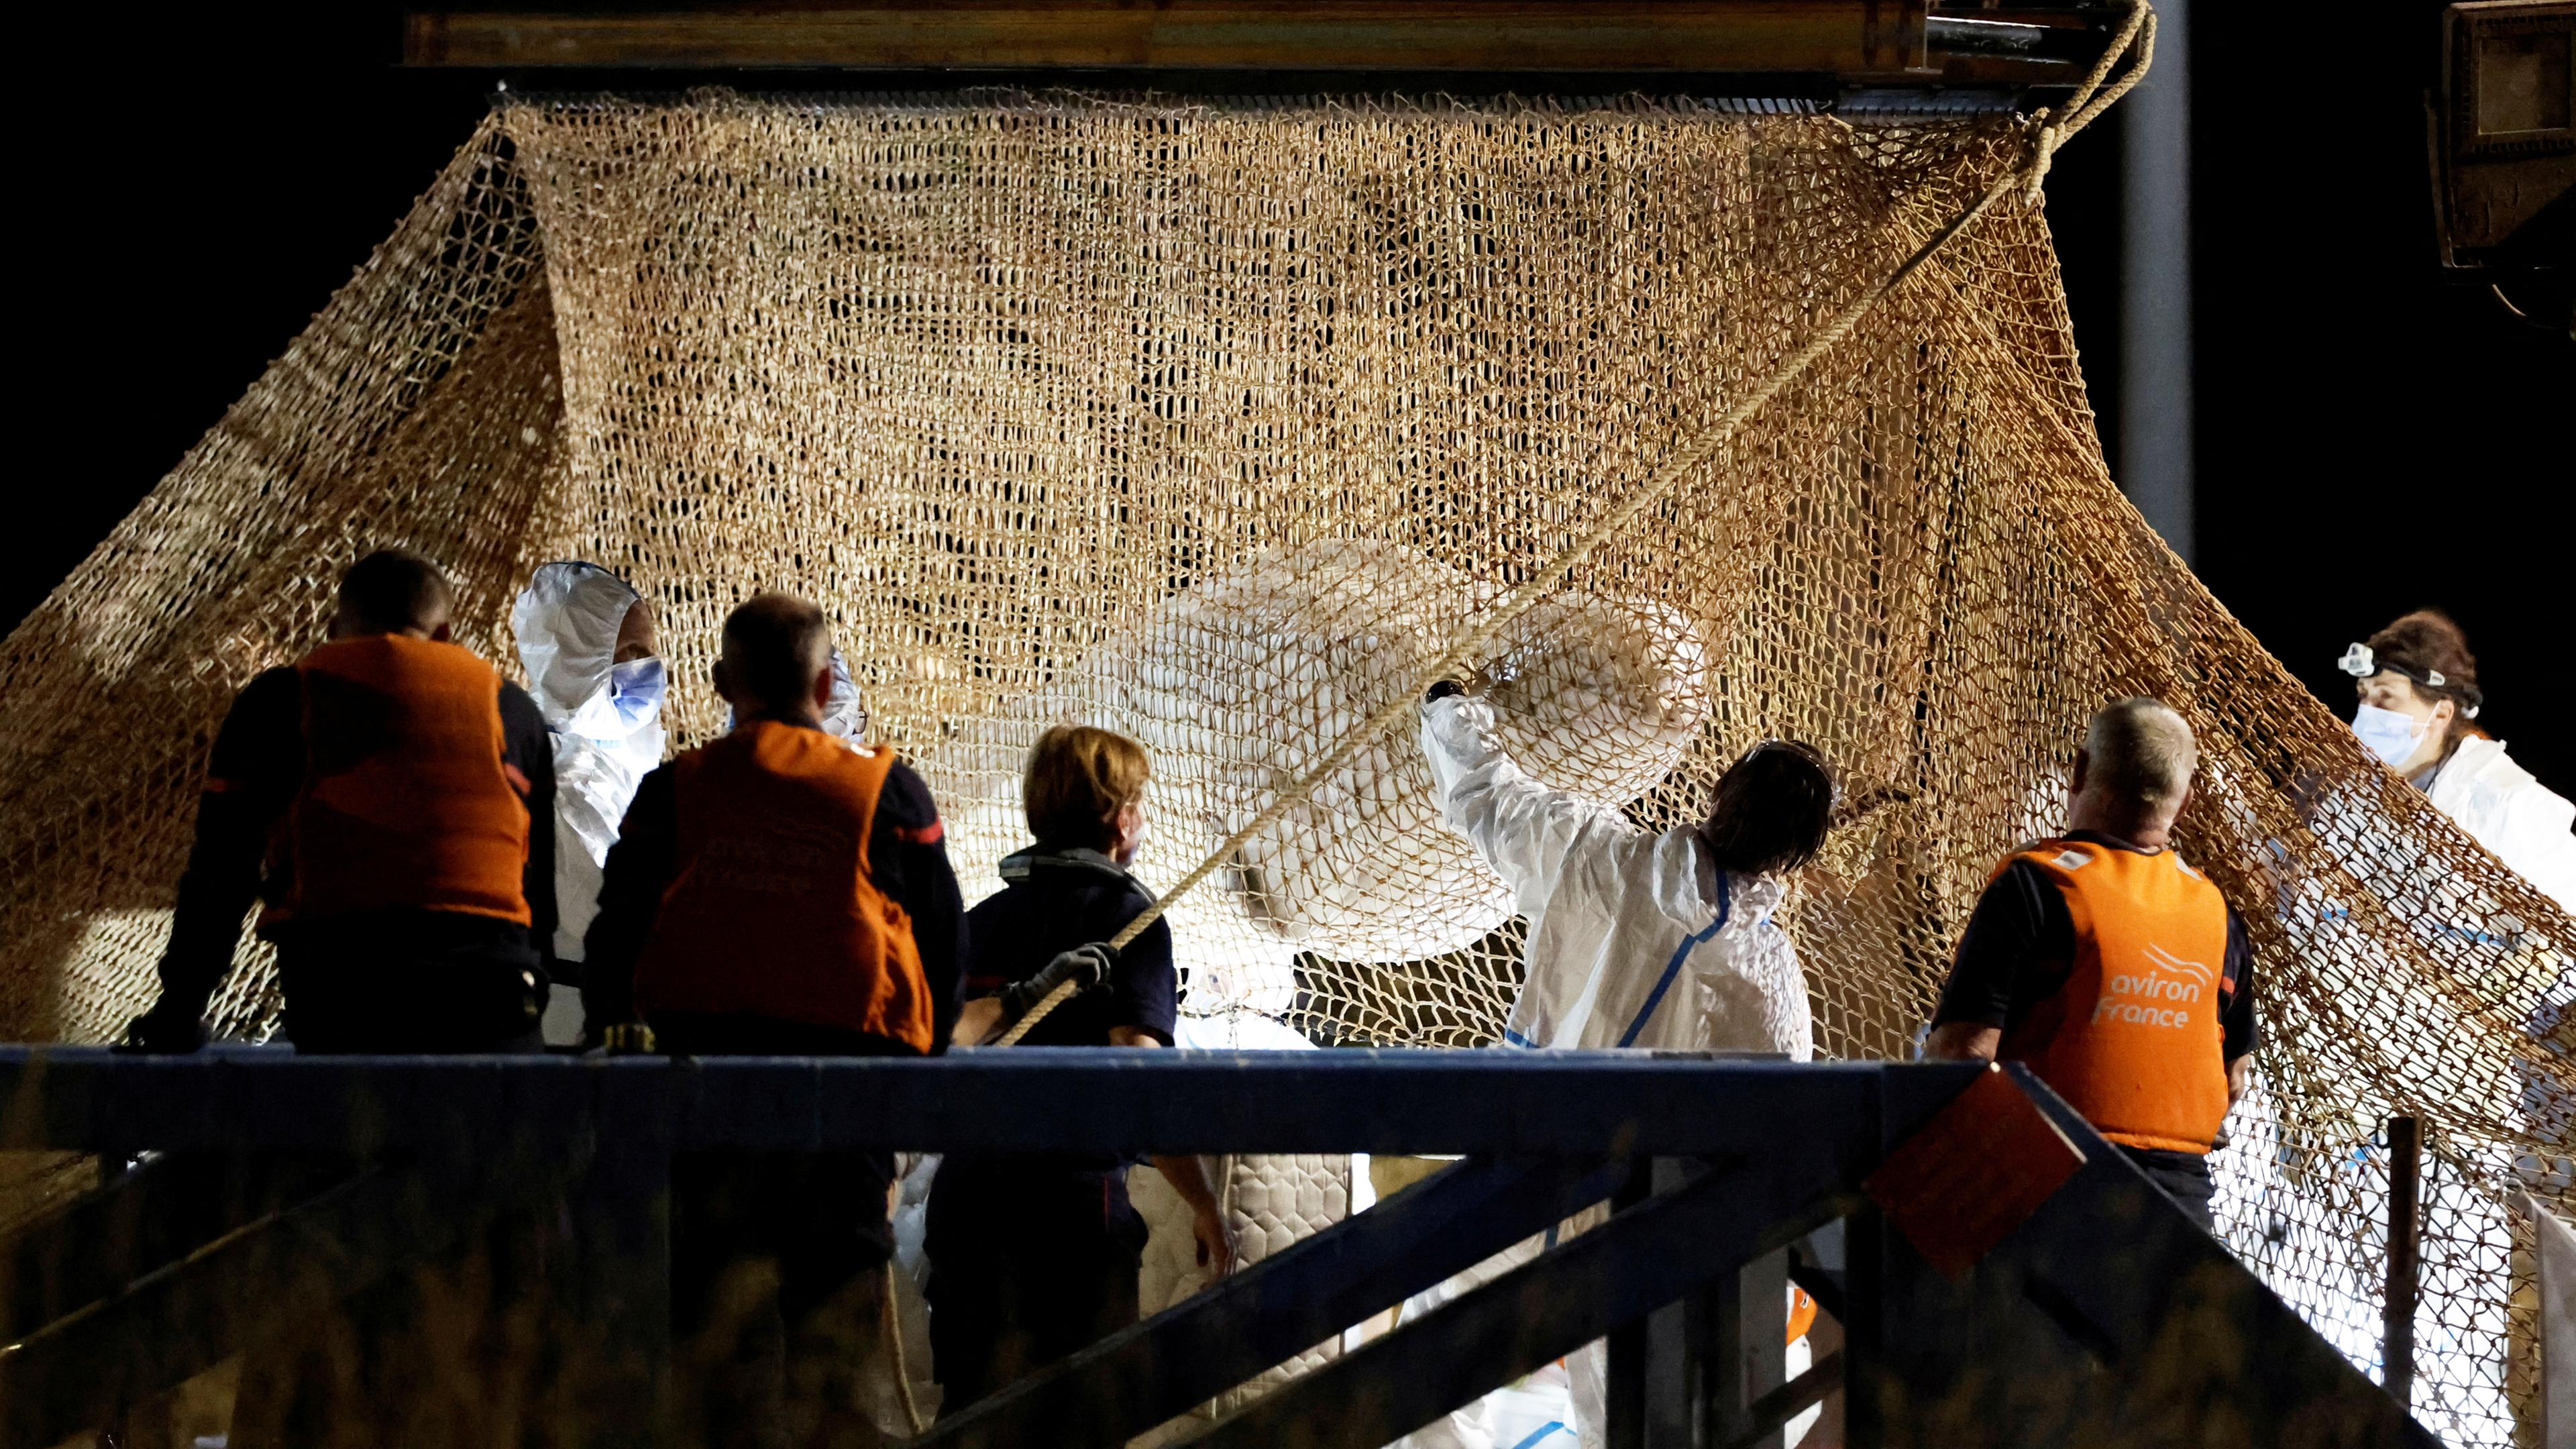 Rettungsaktion in Frankreich: Belugawal wird aus der Seine gehoben